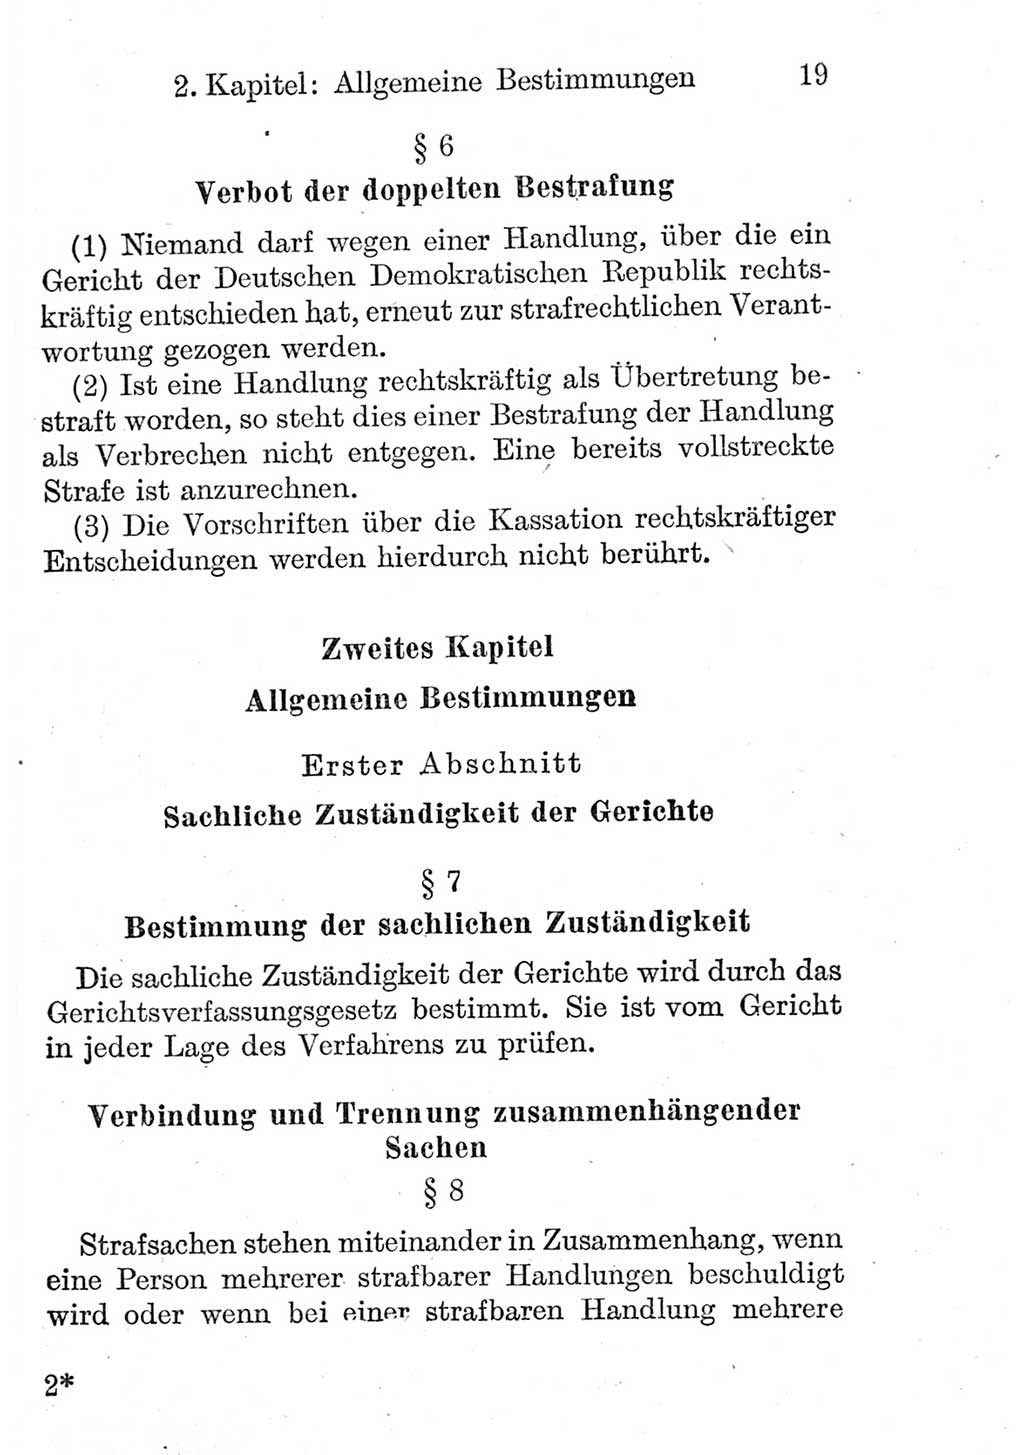 Strafprozeßordnung (StPO), Gerichtsverfassungsgesetz (GVG), Staatsanwaltsgesetz (StAG) und Jugendgerichtsgesetz (JGG) [Deutsche Demokratische Republik (DDR)] 1952, Seite 19 (StPO GVG StAG JGG DDR 1952, S. 19)